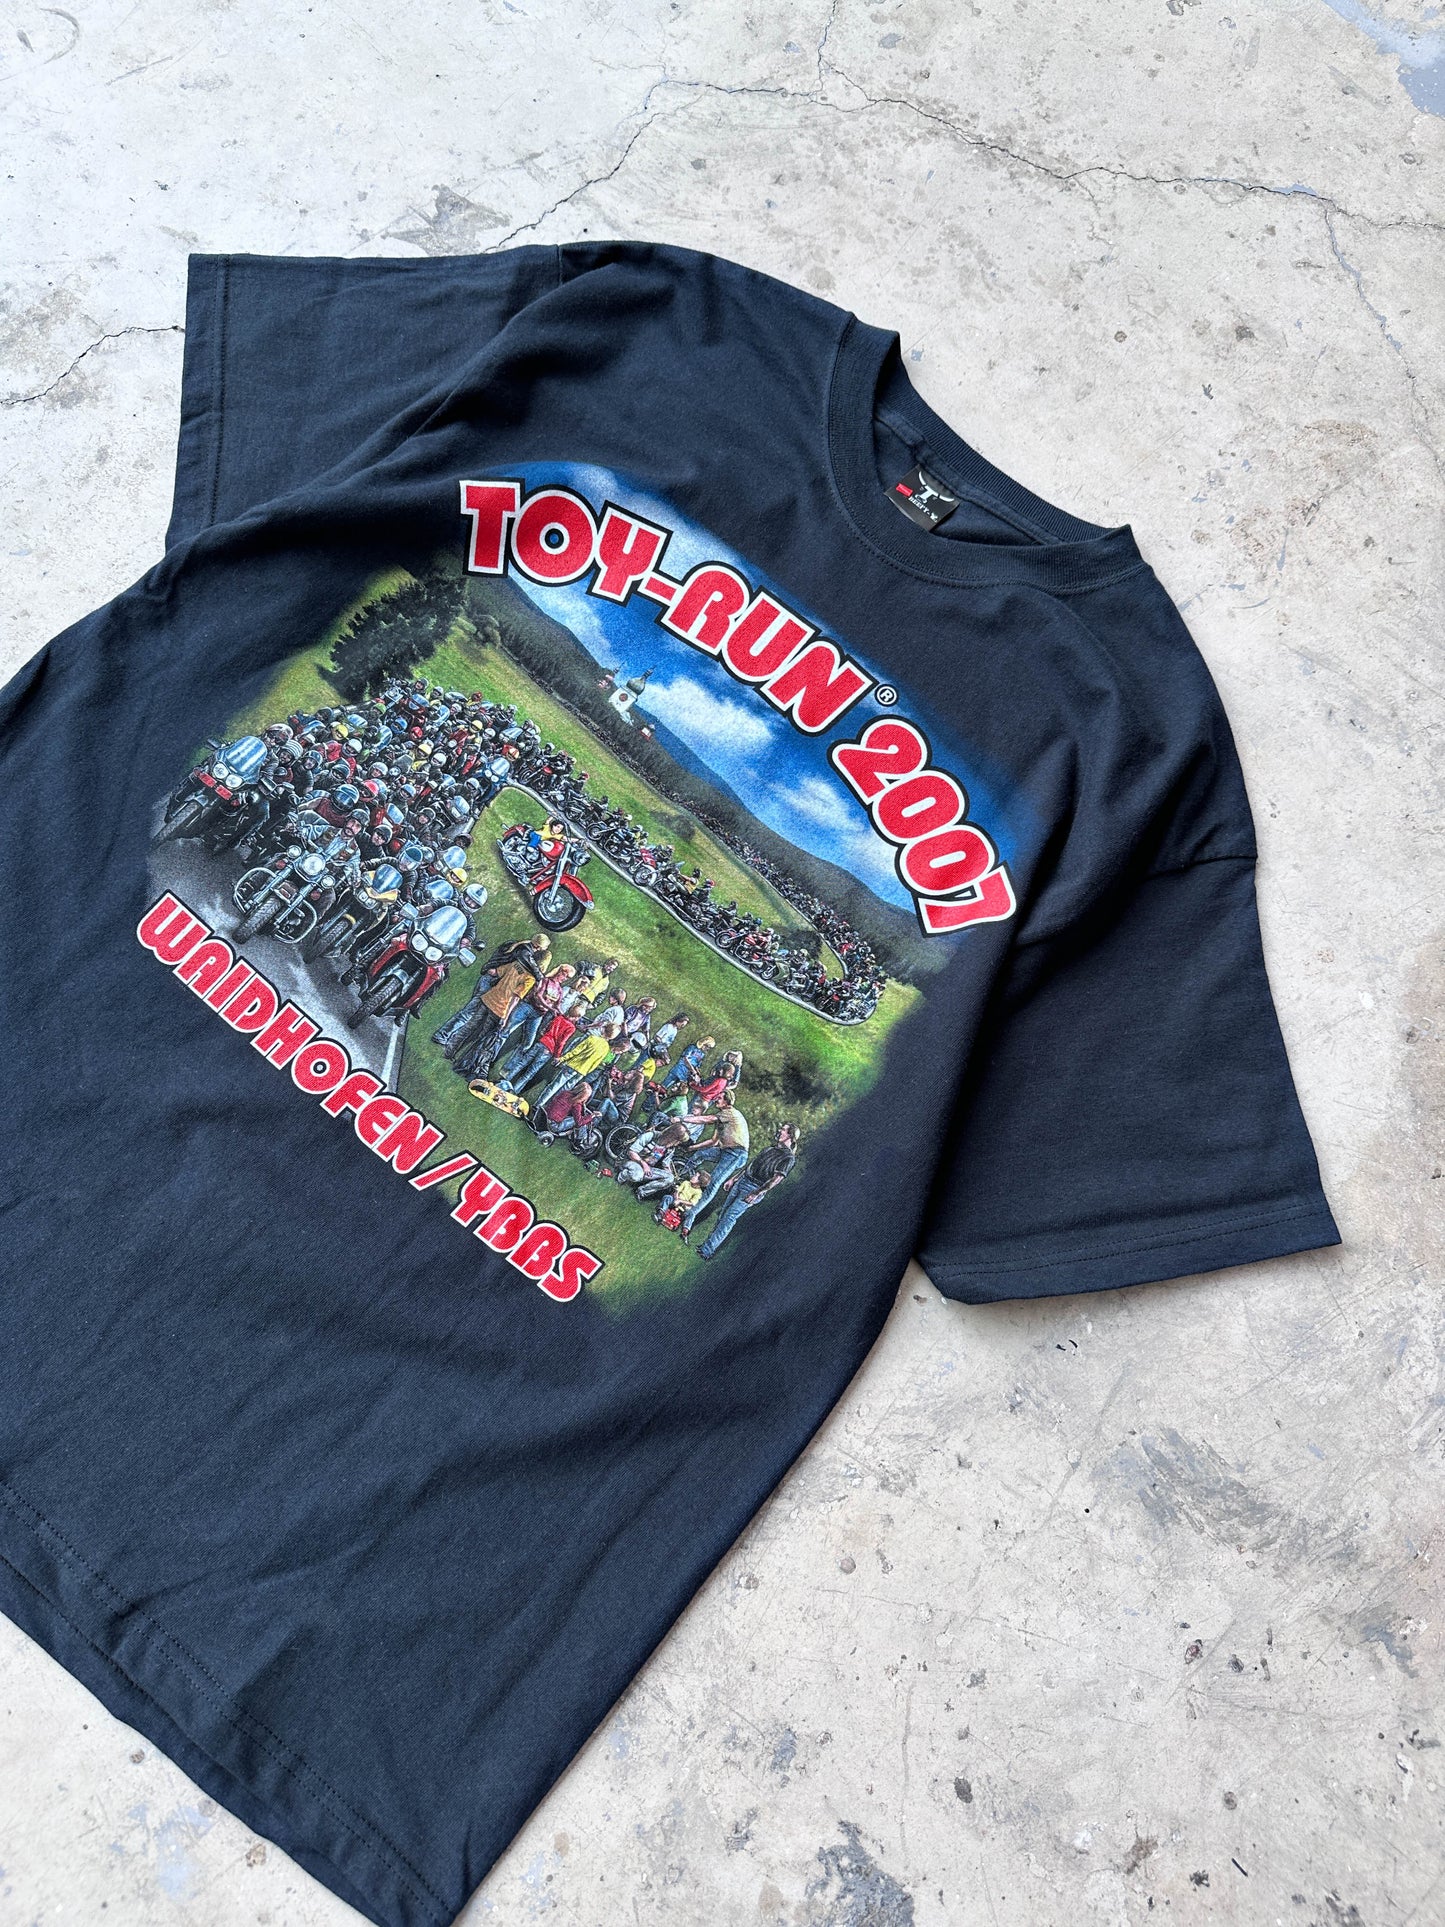 Toy-Run Waidhofen 2007 vintage t-shirt